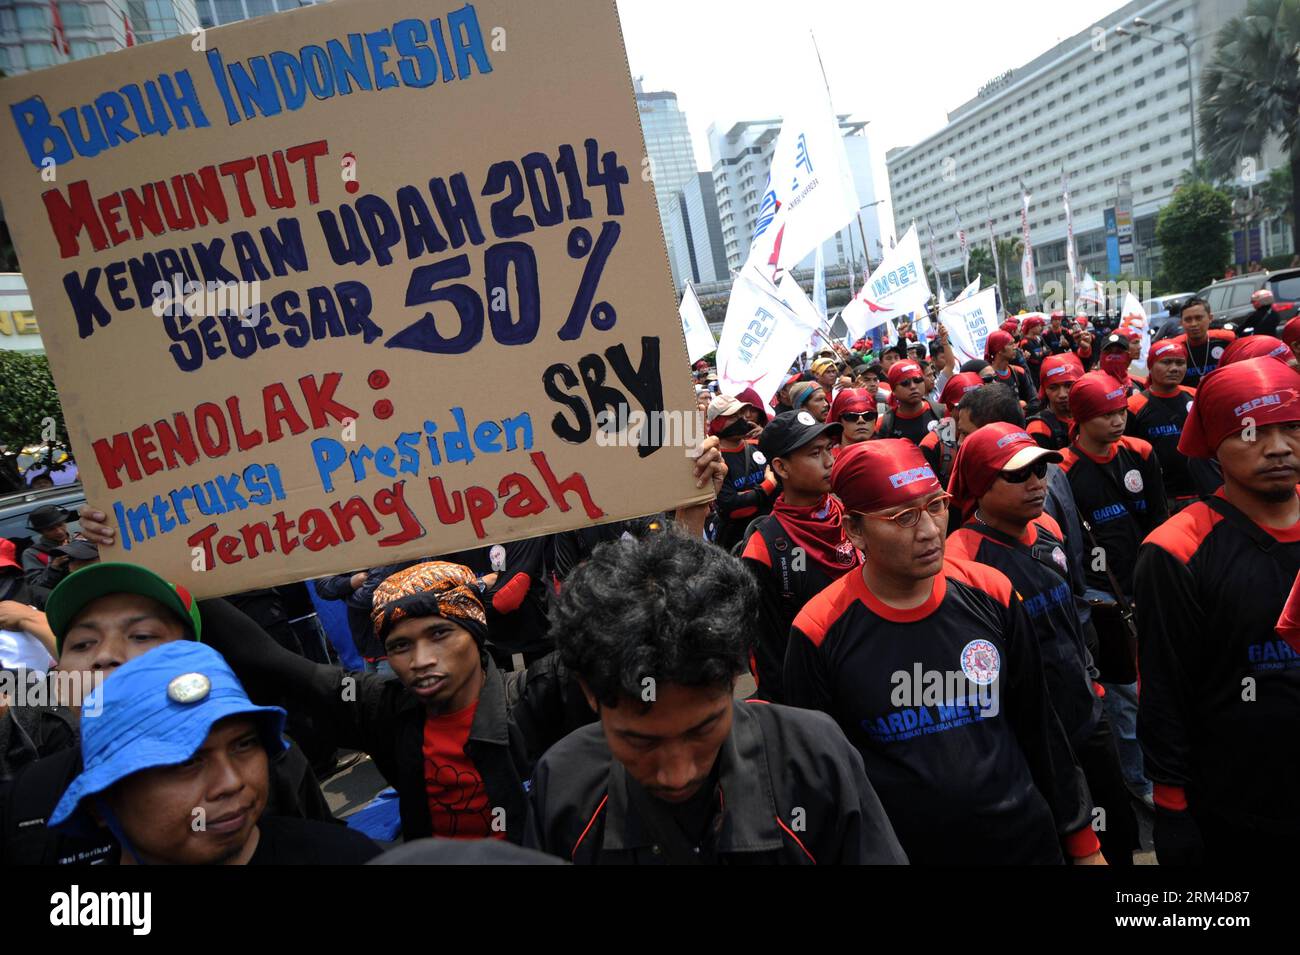 Bildnummer: 60436526 Datum: 05.09.2013 Copyright: imago/Xinhua (130905) -- JAKARTA, 5. September 2013 (Xinhua) -- Demonstranten verschiedener indonesischer Arbeitsorganisationen halten während einer Kundgebung, bei der die Erhöhung der Lebenshaltungslöhne für Jakarta-Arbeiter gefordert wird, am 5. September 2013 in Jakarta ein Plakat. (Xinhua/Veri Sanovri) INDONESIA-JAKARTA-LABOR-RALLY PUBLICATIONxNOTxINxCHN Politik Demo Protest Löhne xns x0x 2013 quer premiumd 60436526 Datum 05 09 2013 Copyright Imago XINHUA Jakarta 5. September 2013 XINHUA-Demonstranten verschiedener indonesischer Labororganisationen halten sich während einer Rallye auf, bei der die Erhöhung des Lebensunterhalts von W gefordert wird Stockfoto